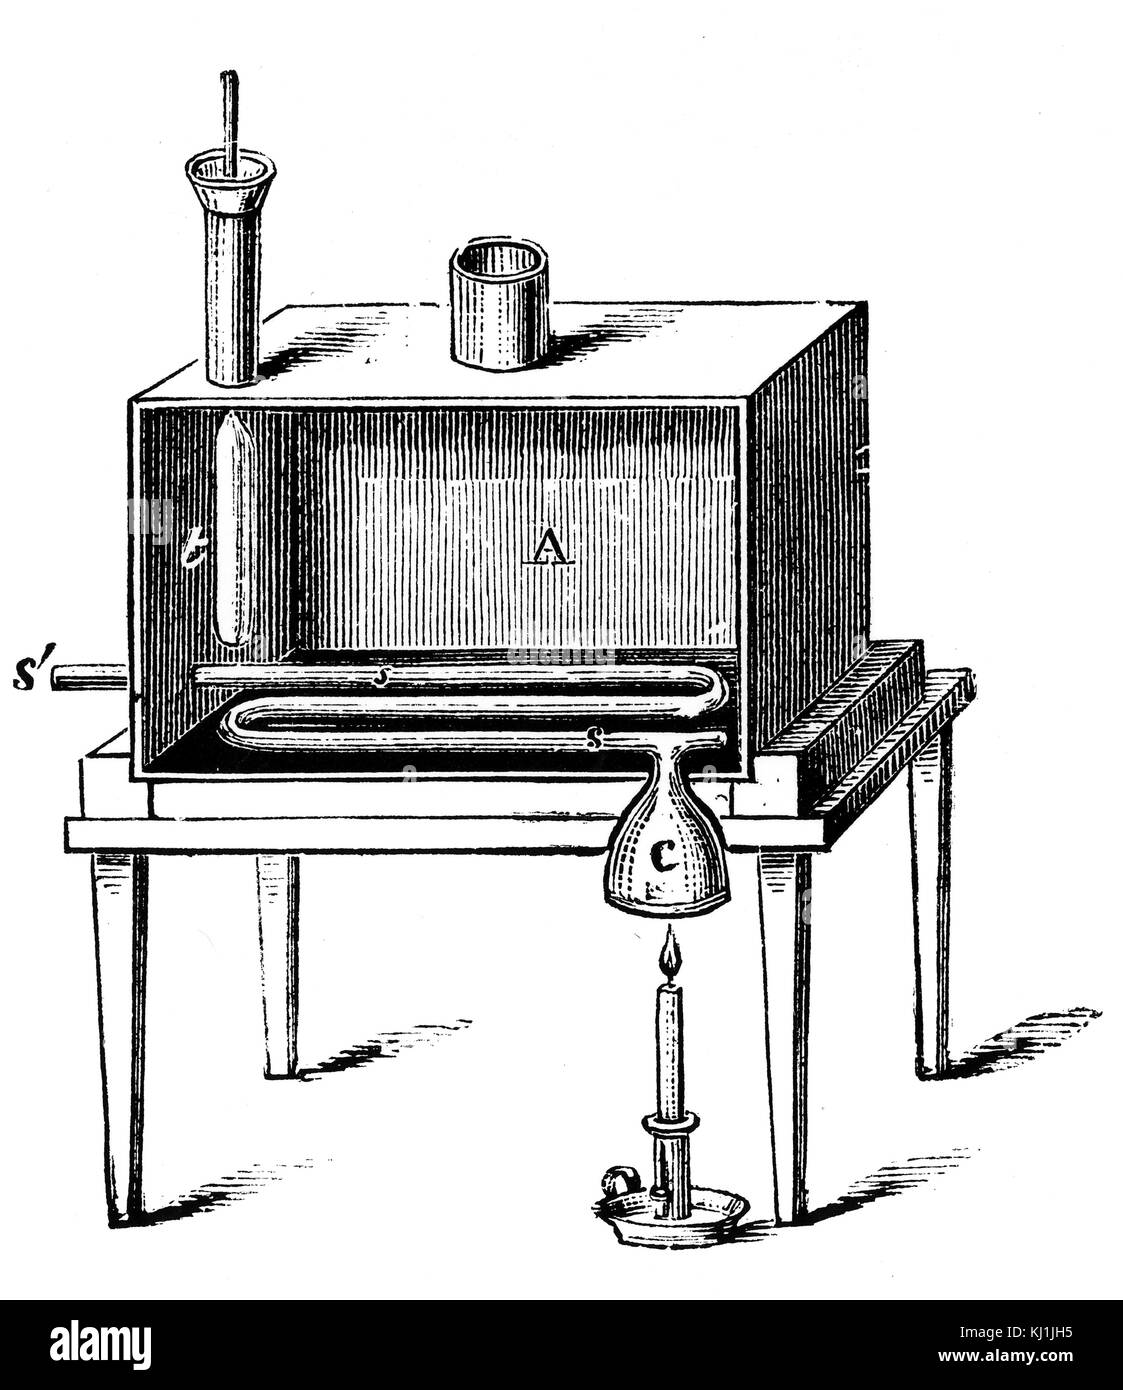 Gravur, Rumford des Kalorimeters, die er verwendet, um die Menge an Wärme, die durch Verbrennung entstehen zu bestimmen. Vom 19. Jahrhundert Stockfoto